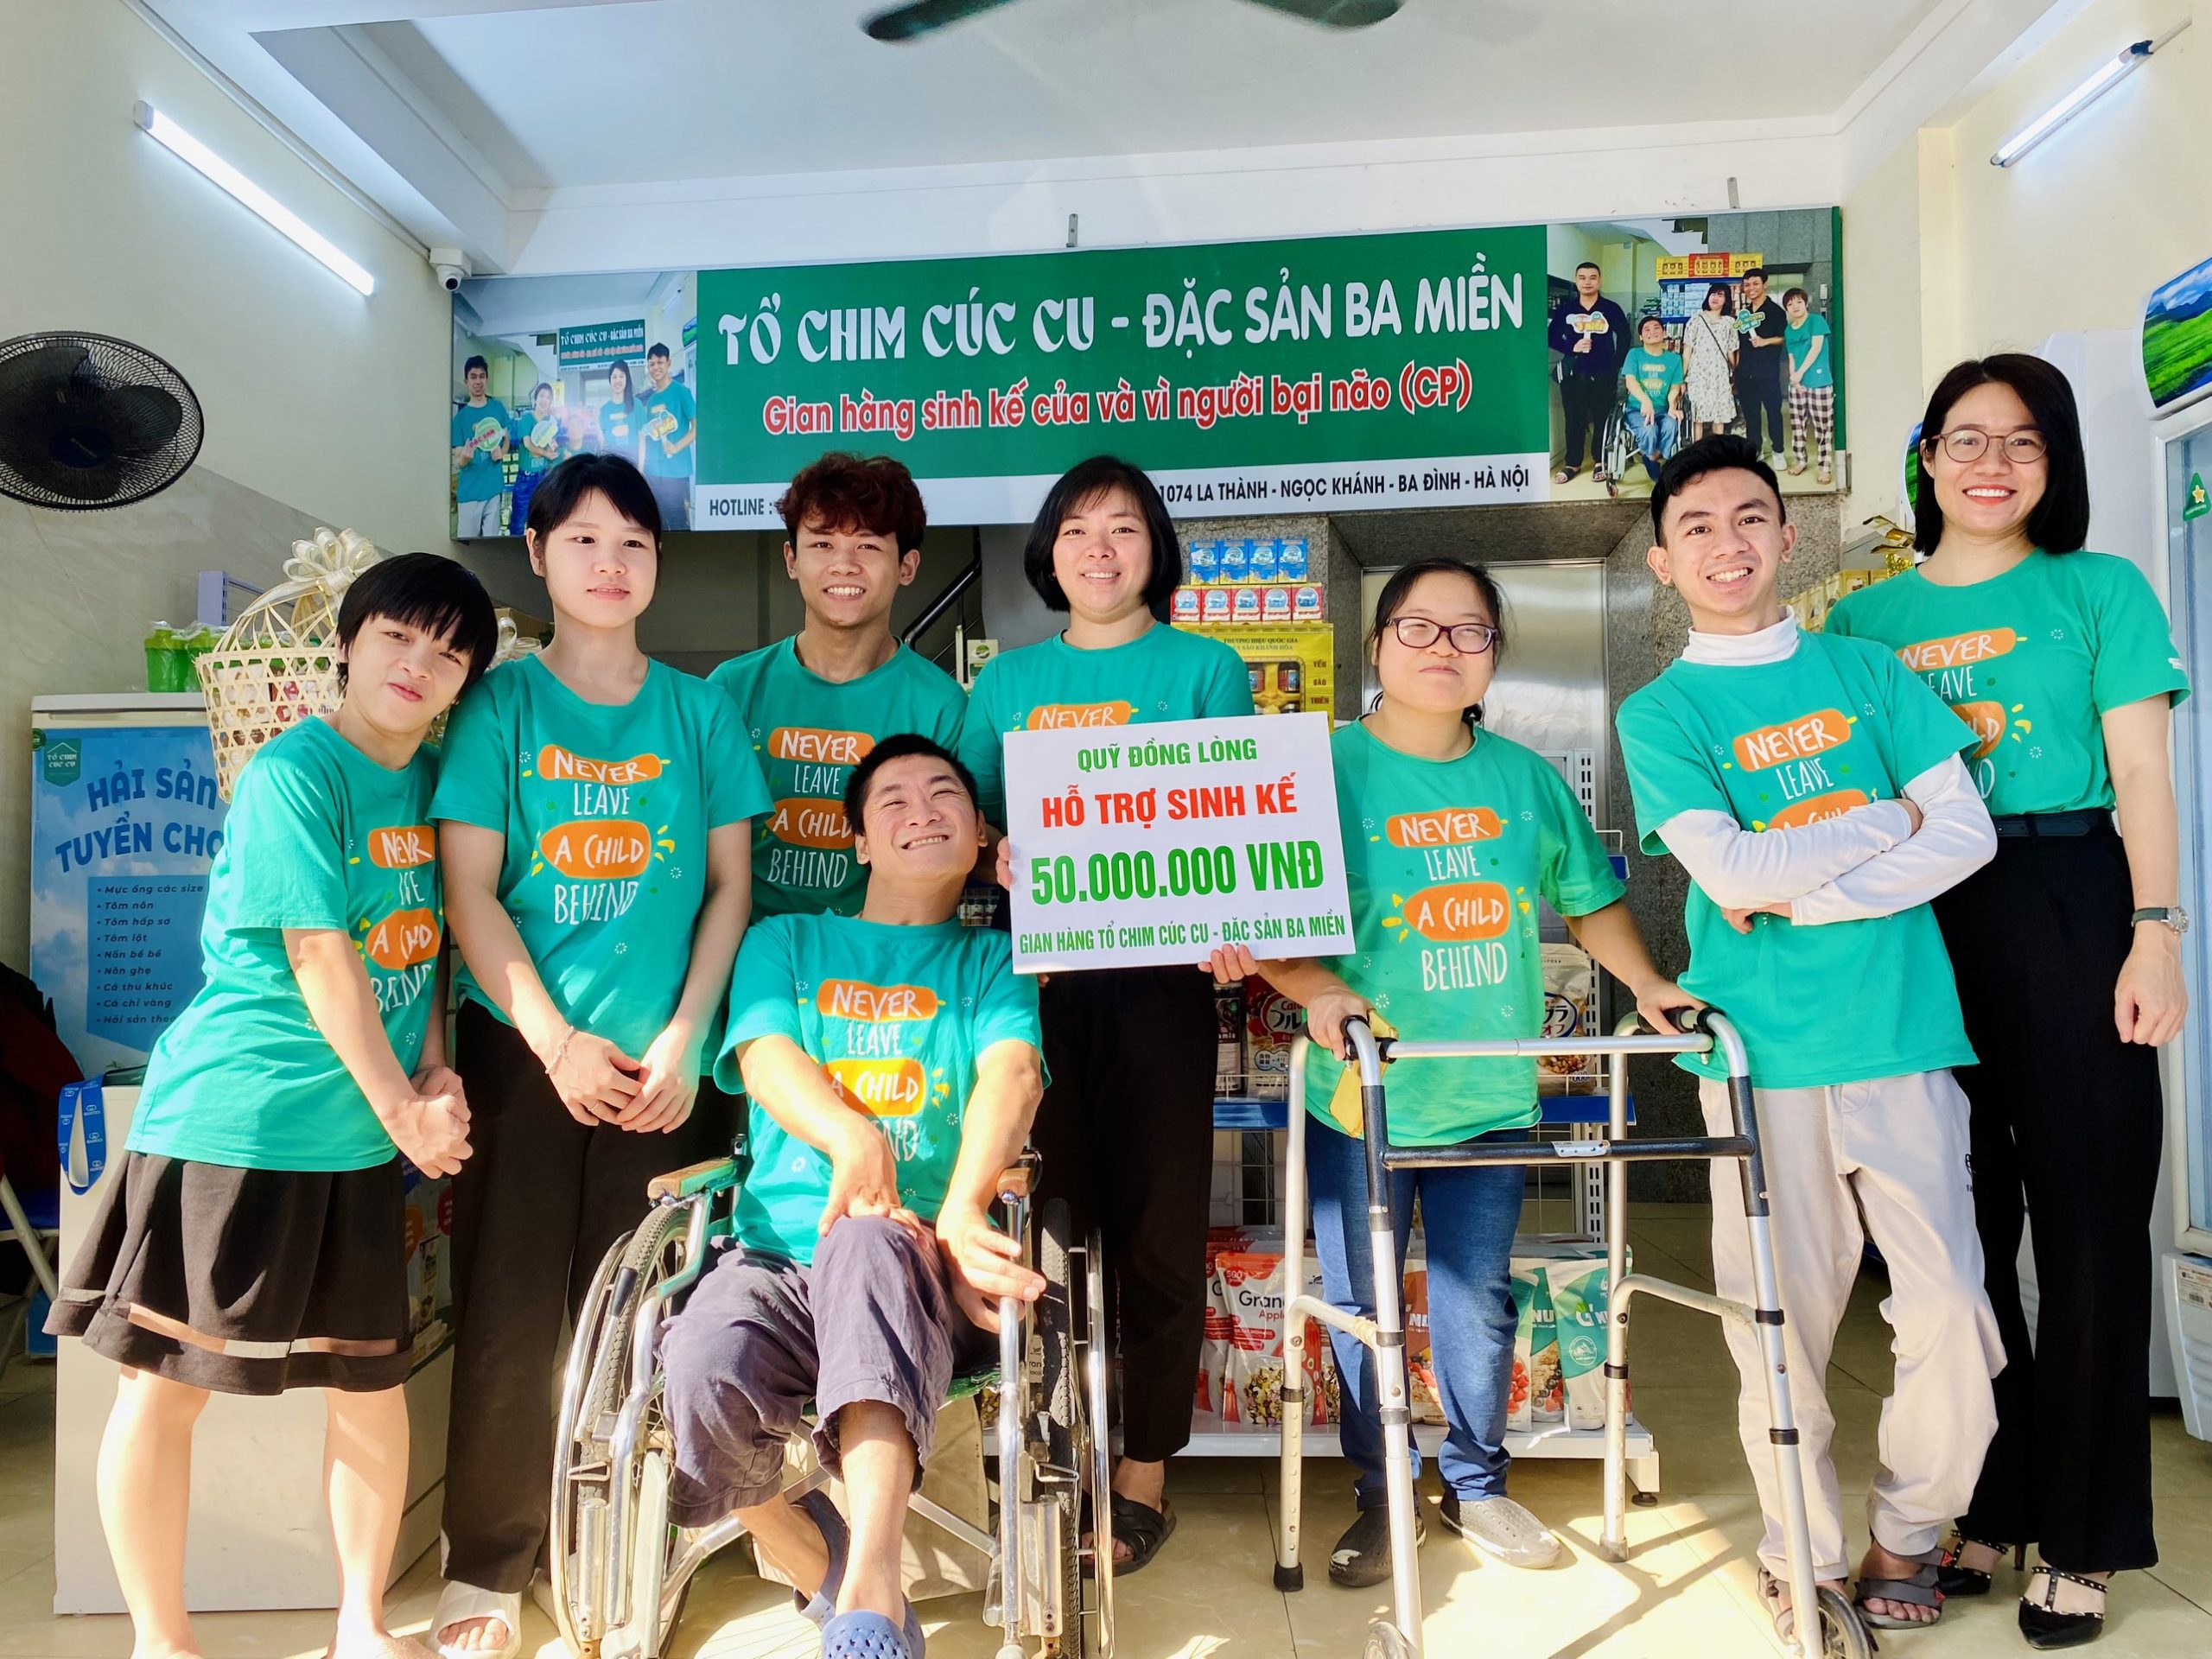 Gian hàng Tổ chim Cúc Cu nhận hỗ trợ vốn sinh kế từ Quỹ Đồng Lòng 50,000,000VND